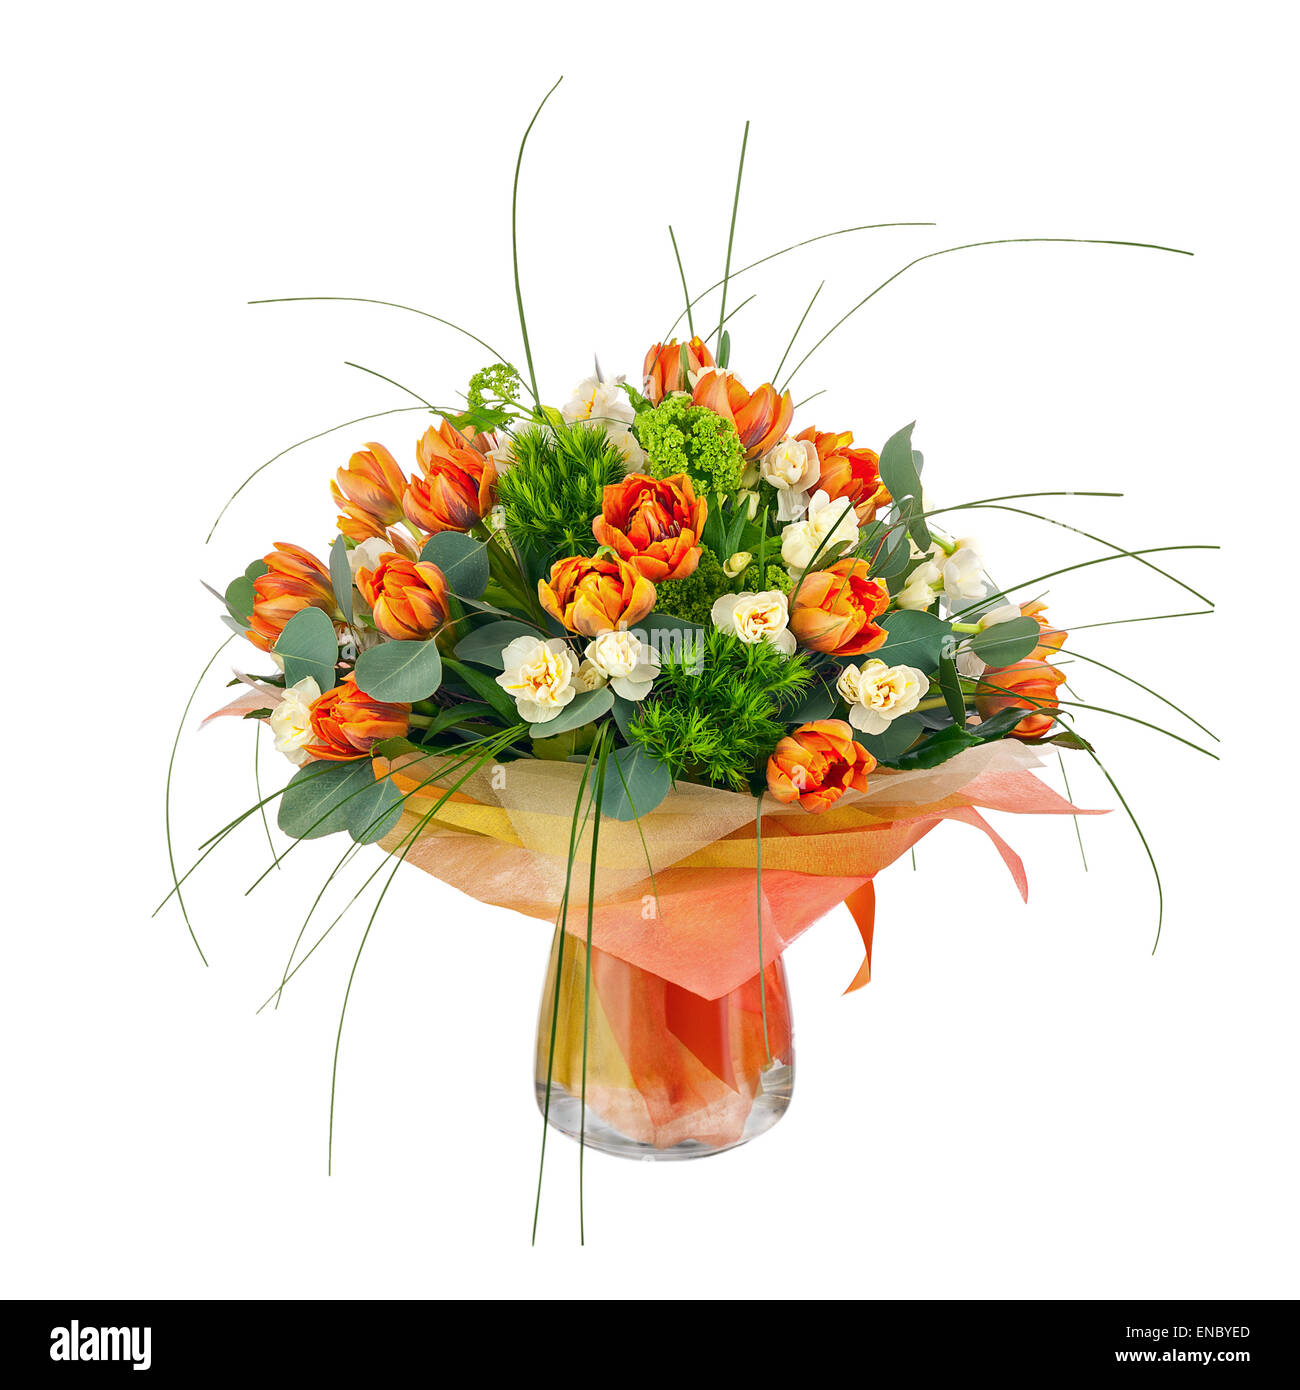 Bouquet de tulipes, narcisses et autres fleurs dans vase en verre isolé sur fond blanc. Libre. Banque D'Images